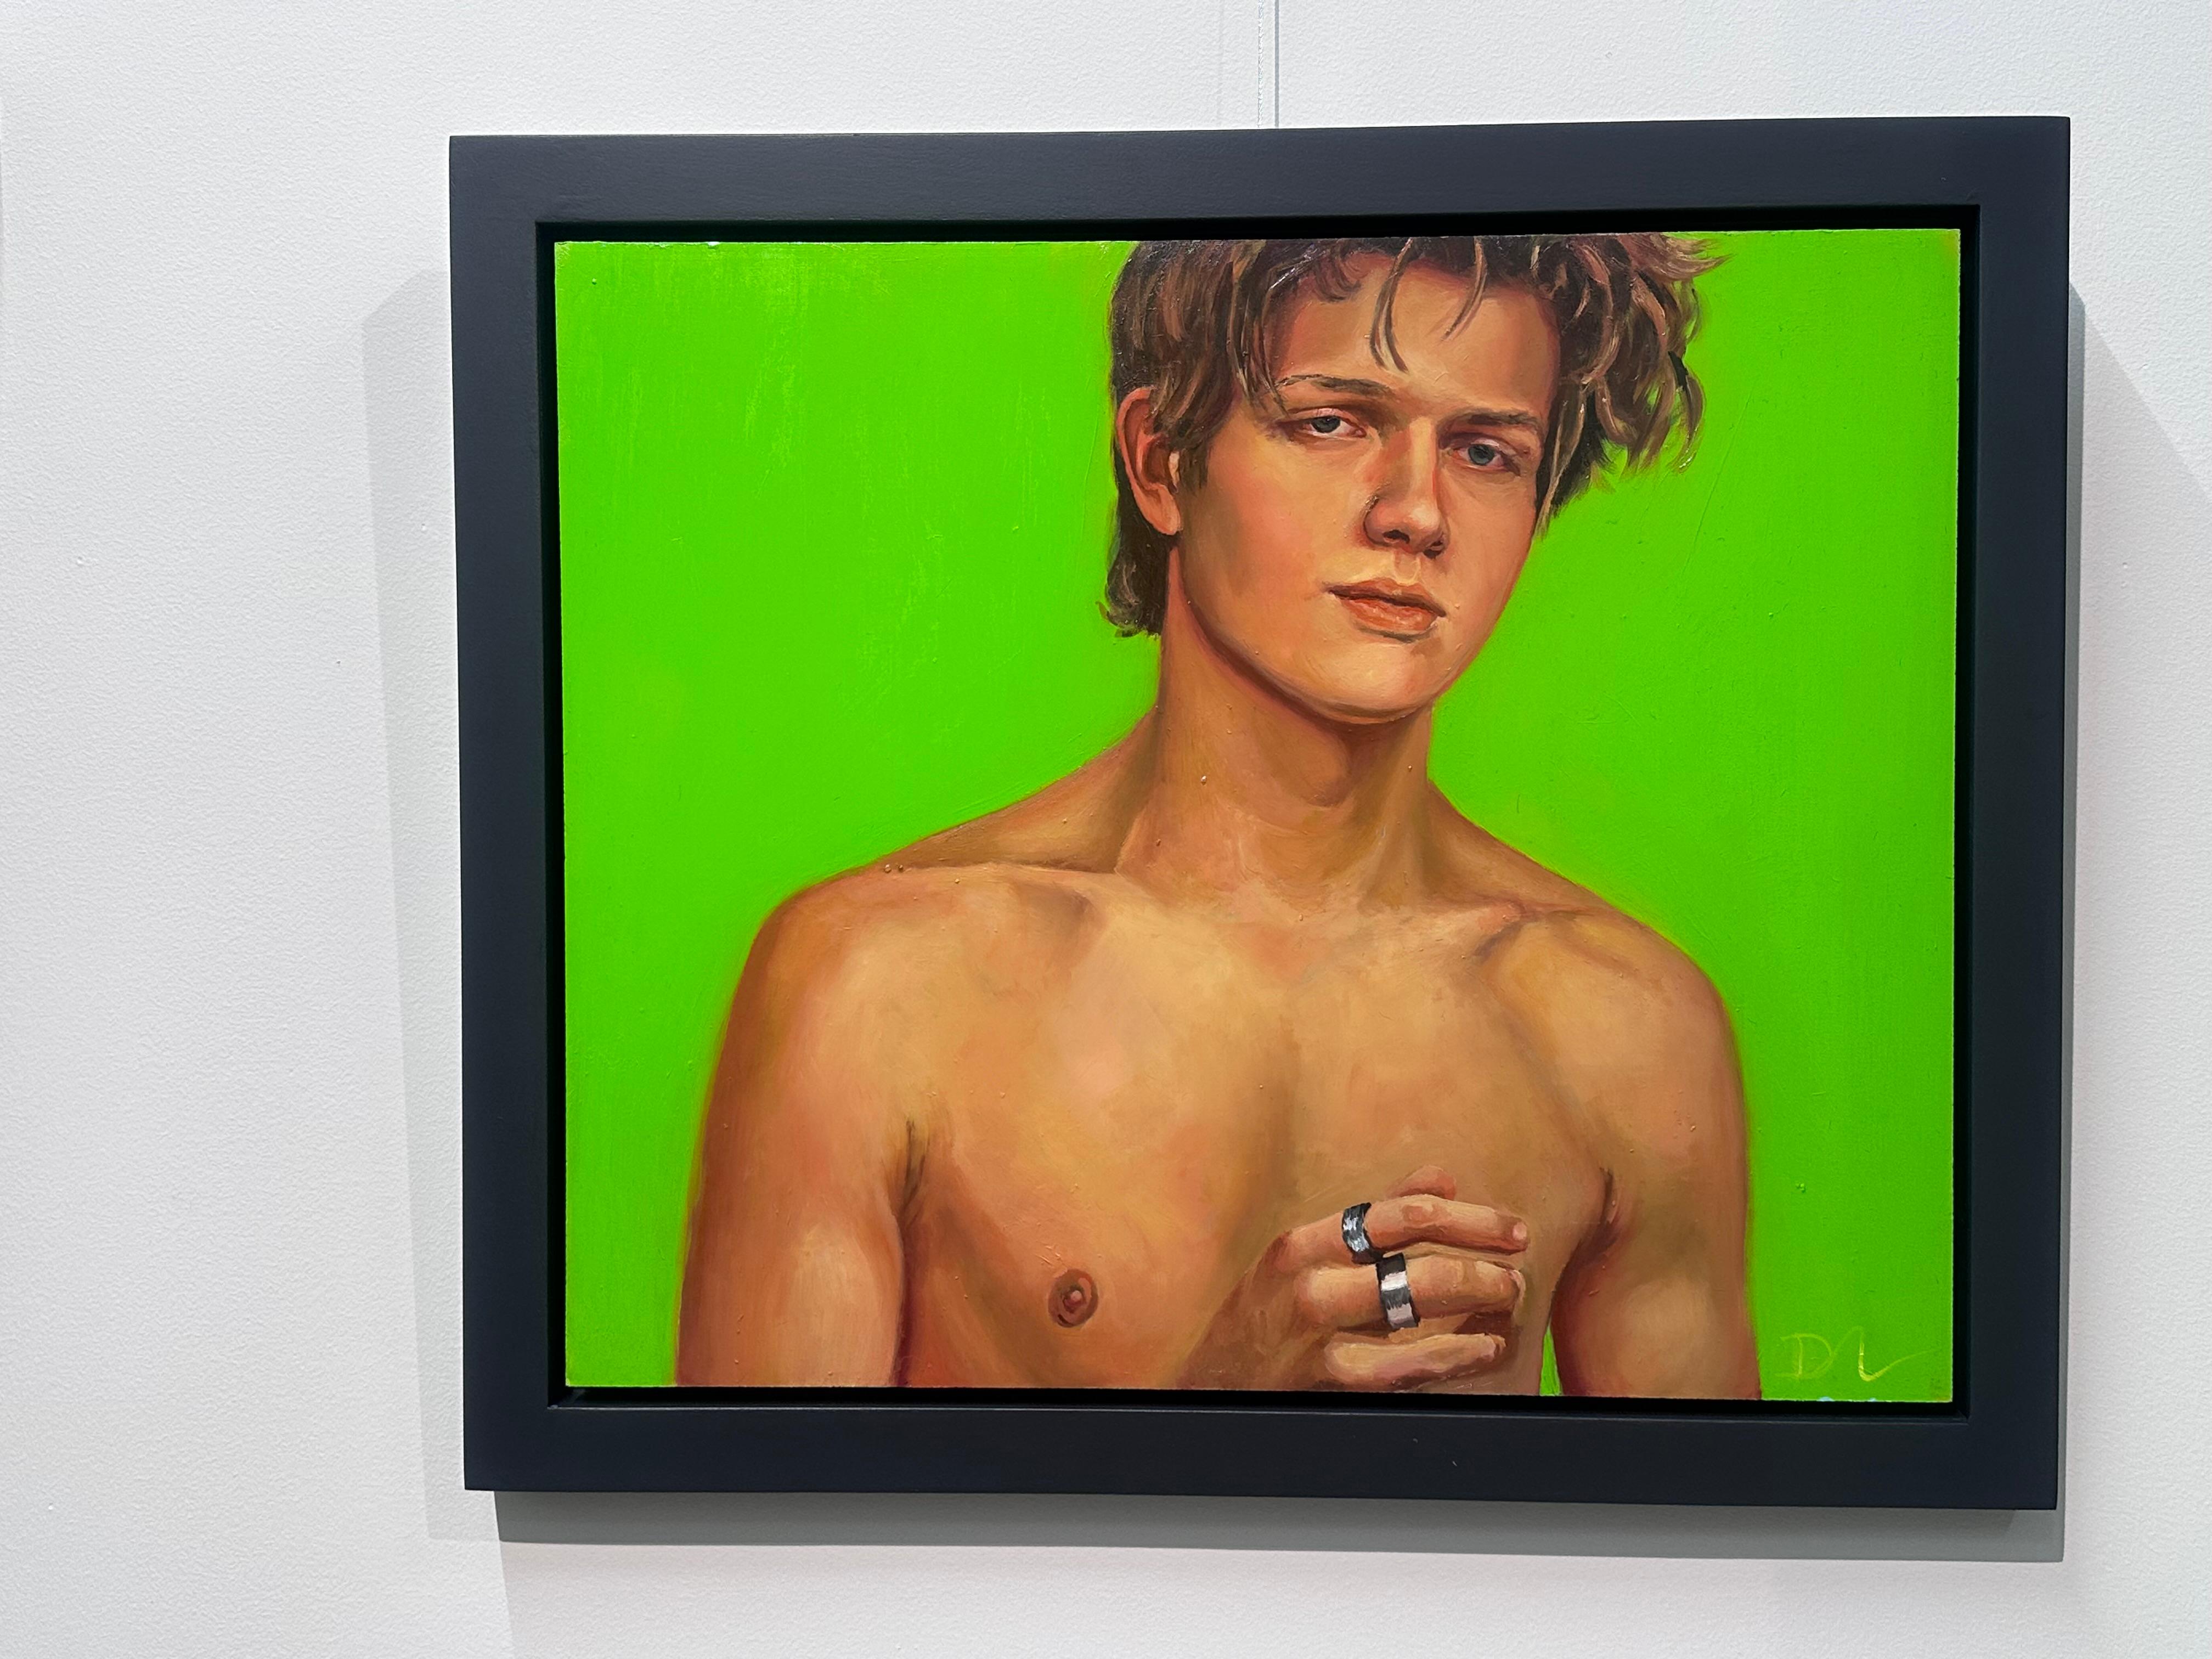 Quand je vis mon rêve - 21e siècle  Peinture contemporaine d'un garçon à la poitrine nue - Painting de David van der Linden